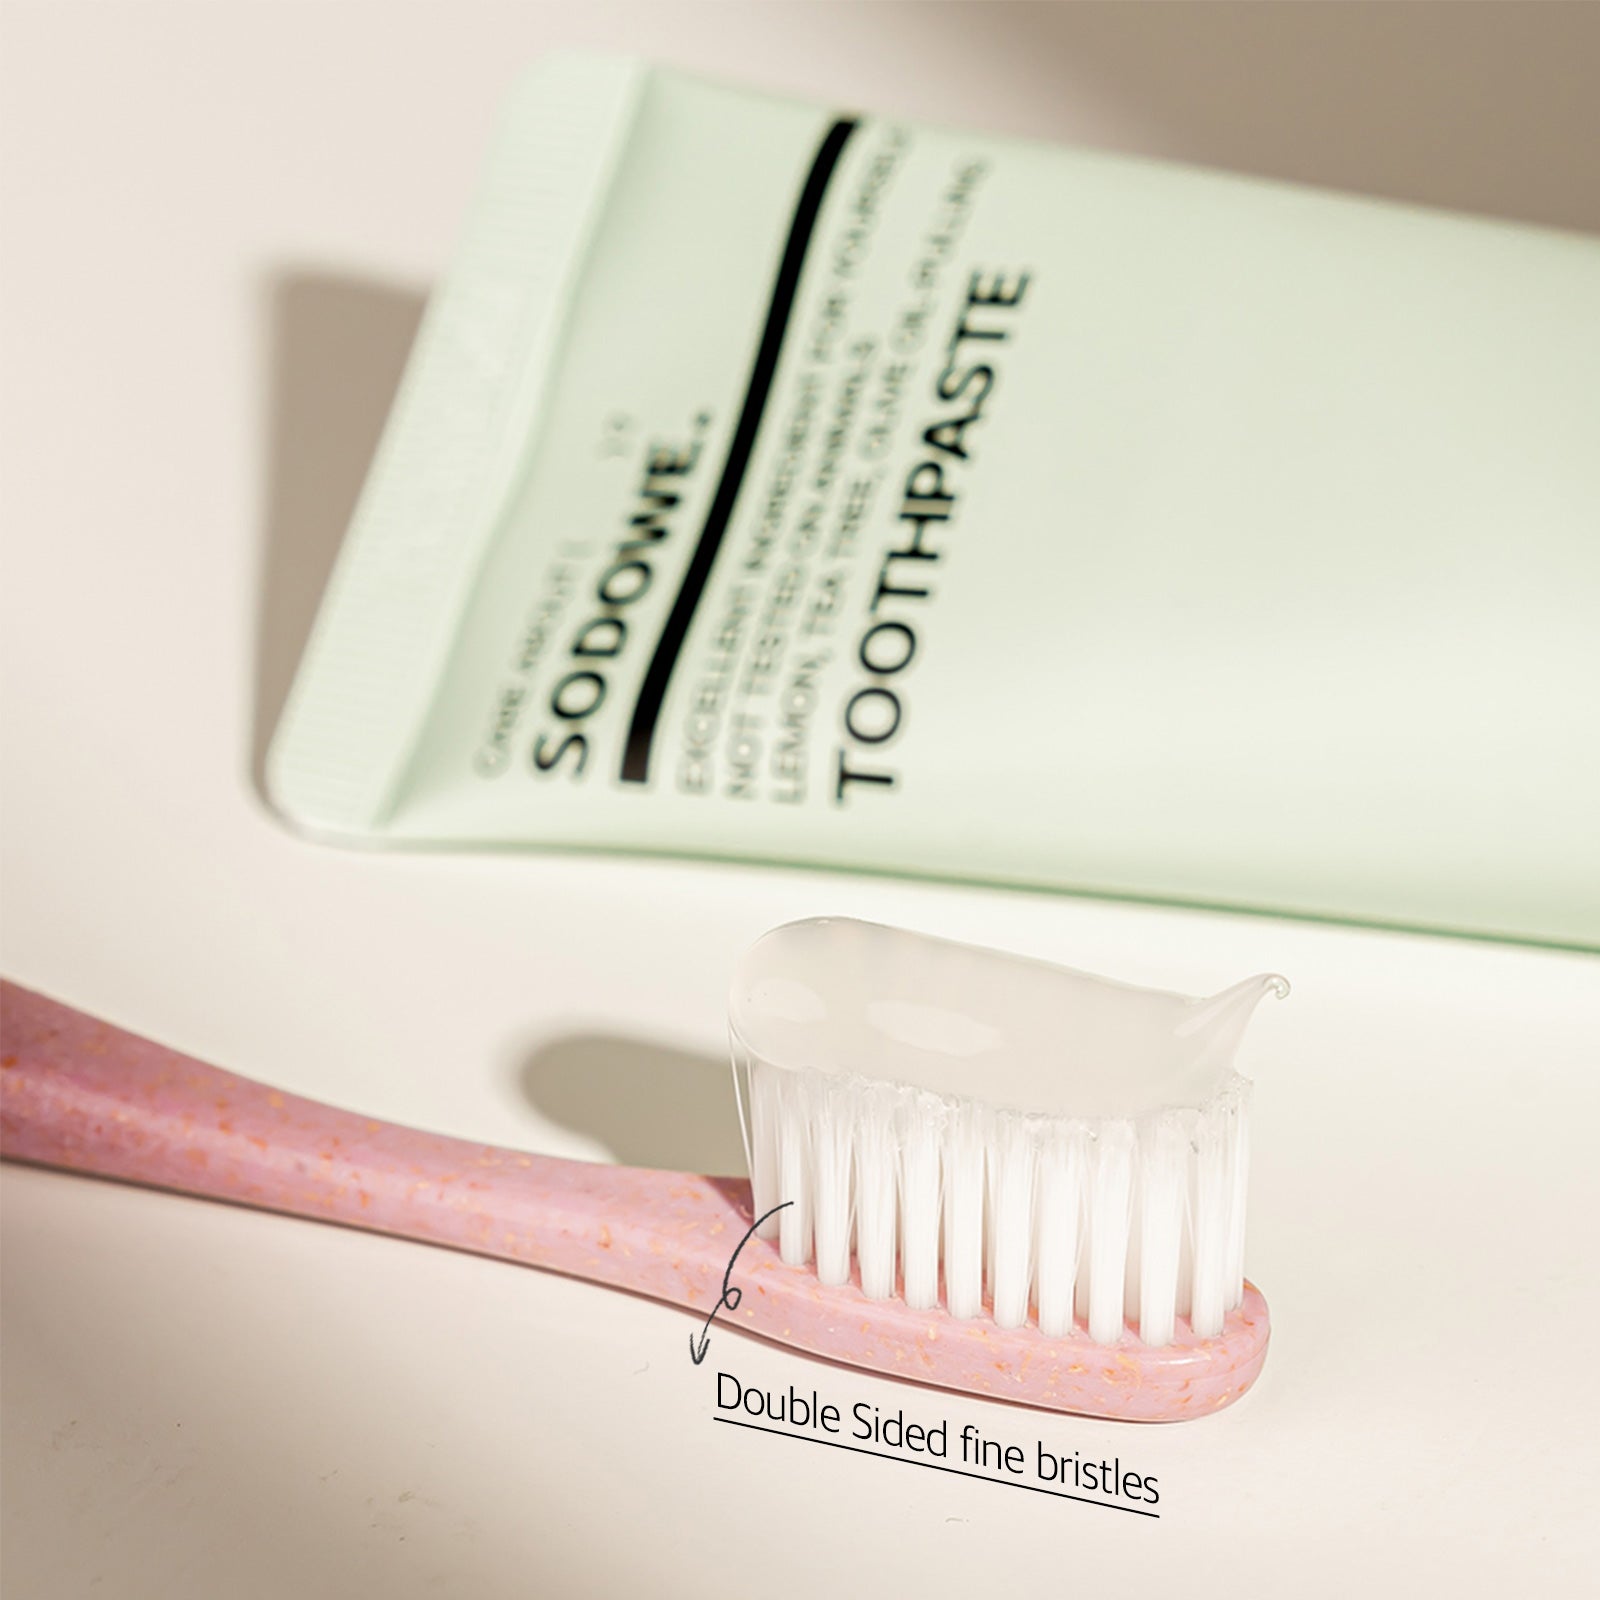 SODOWE. Woodchip Toothbrush Set - Slowrecipe